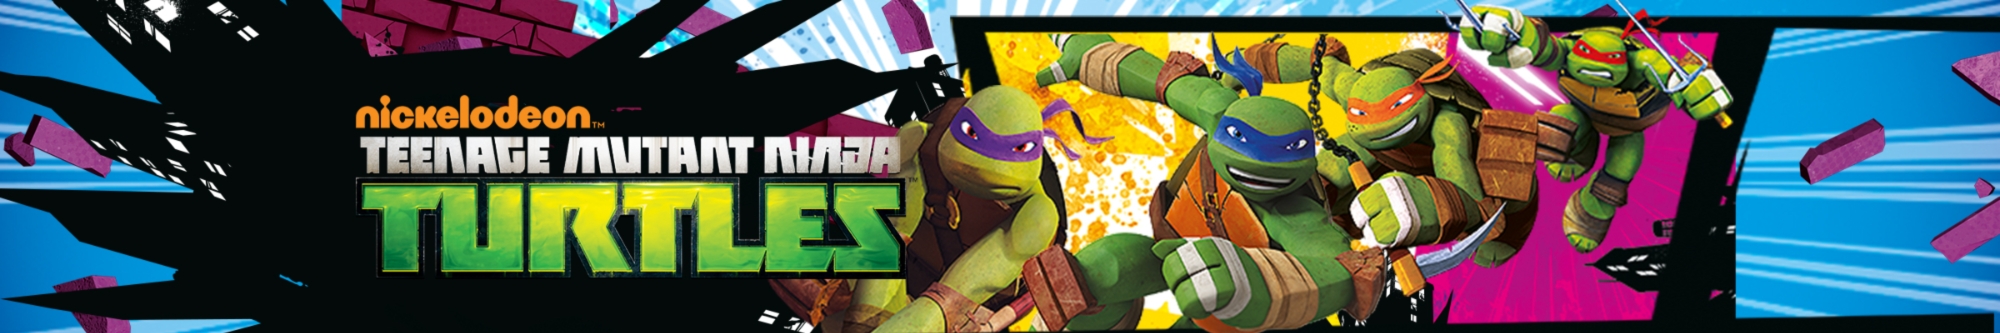 Showroom - Ninja Turtles